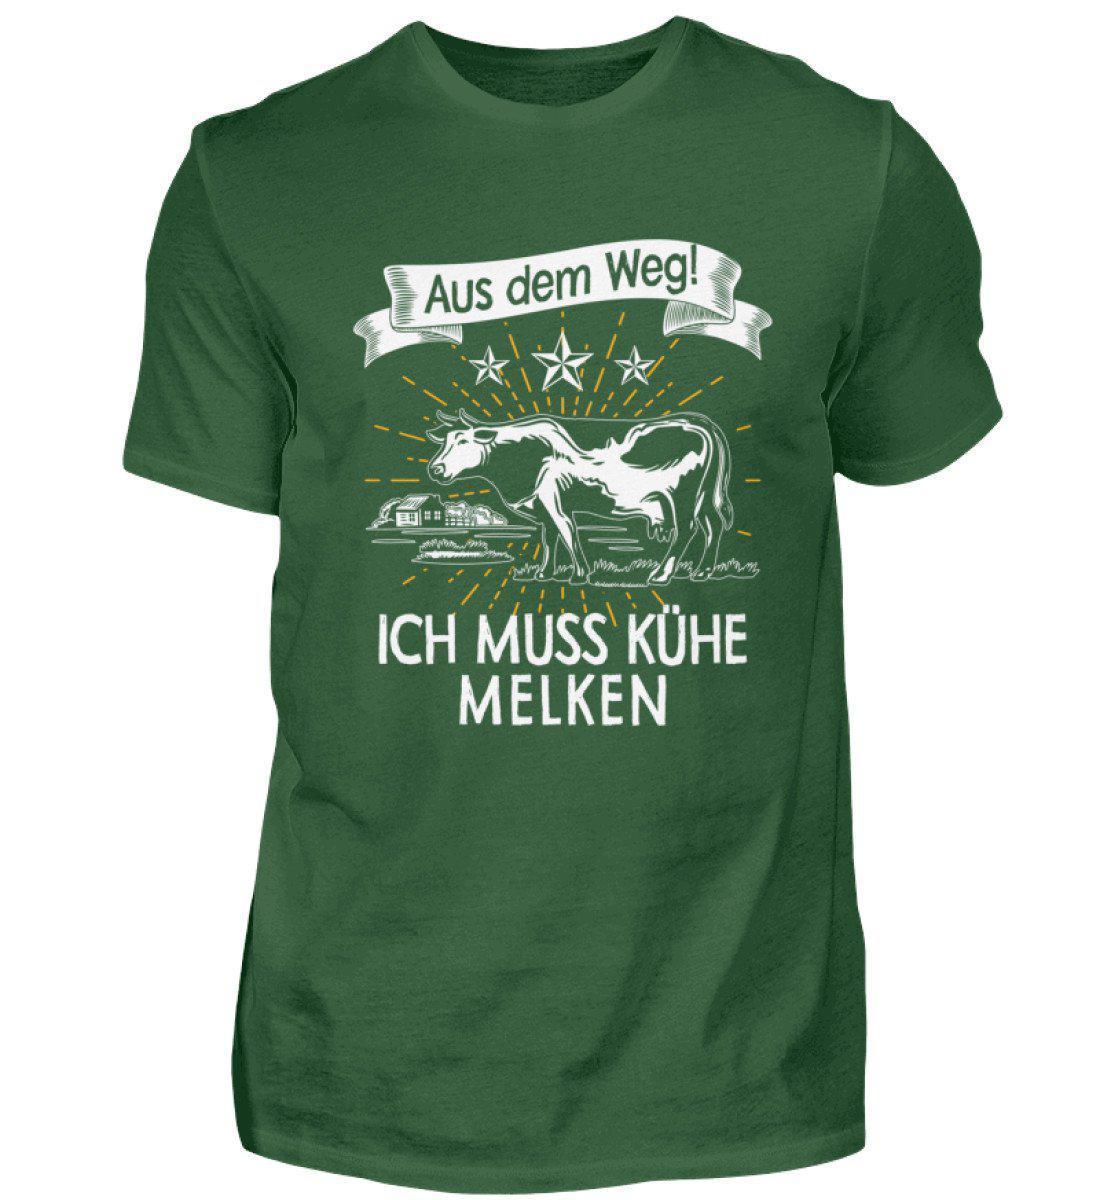 Aus dem Weg! Kühe melken · Herren T-Shirt-Herren Basic T-Shirt-Bottle Green-S-Agrarstarz